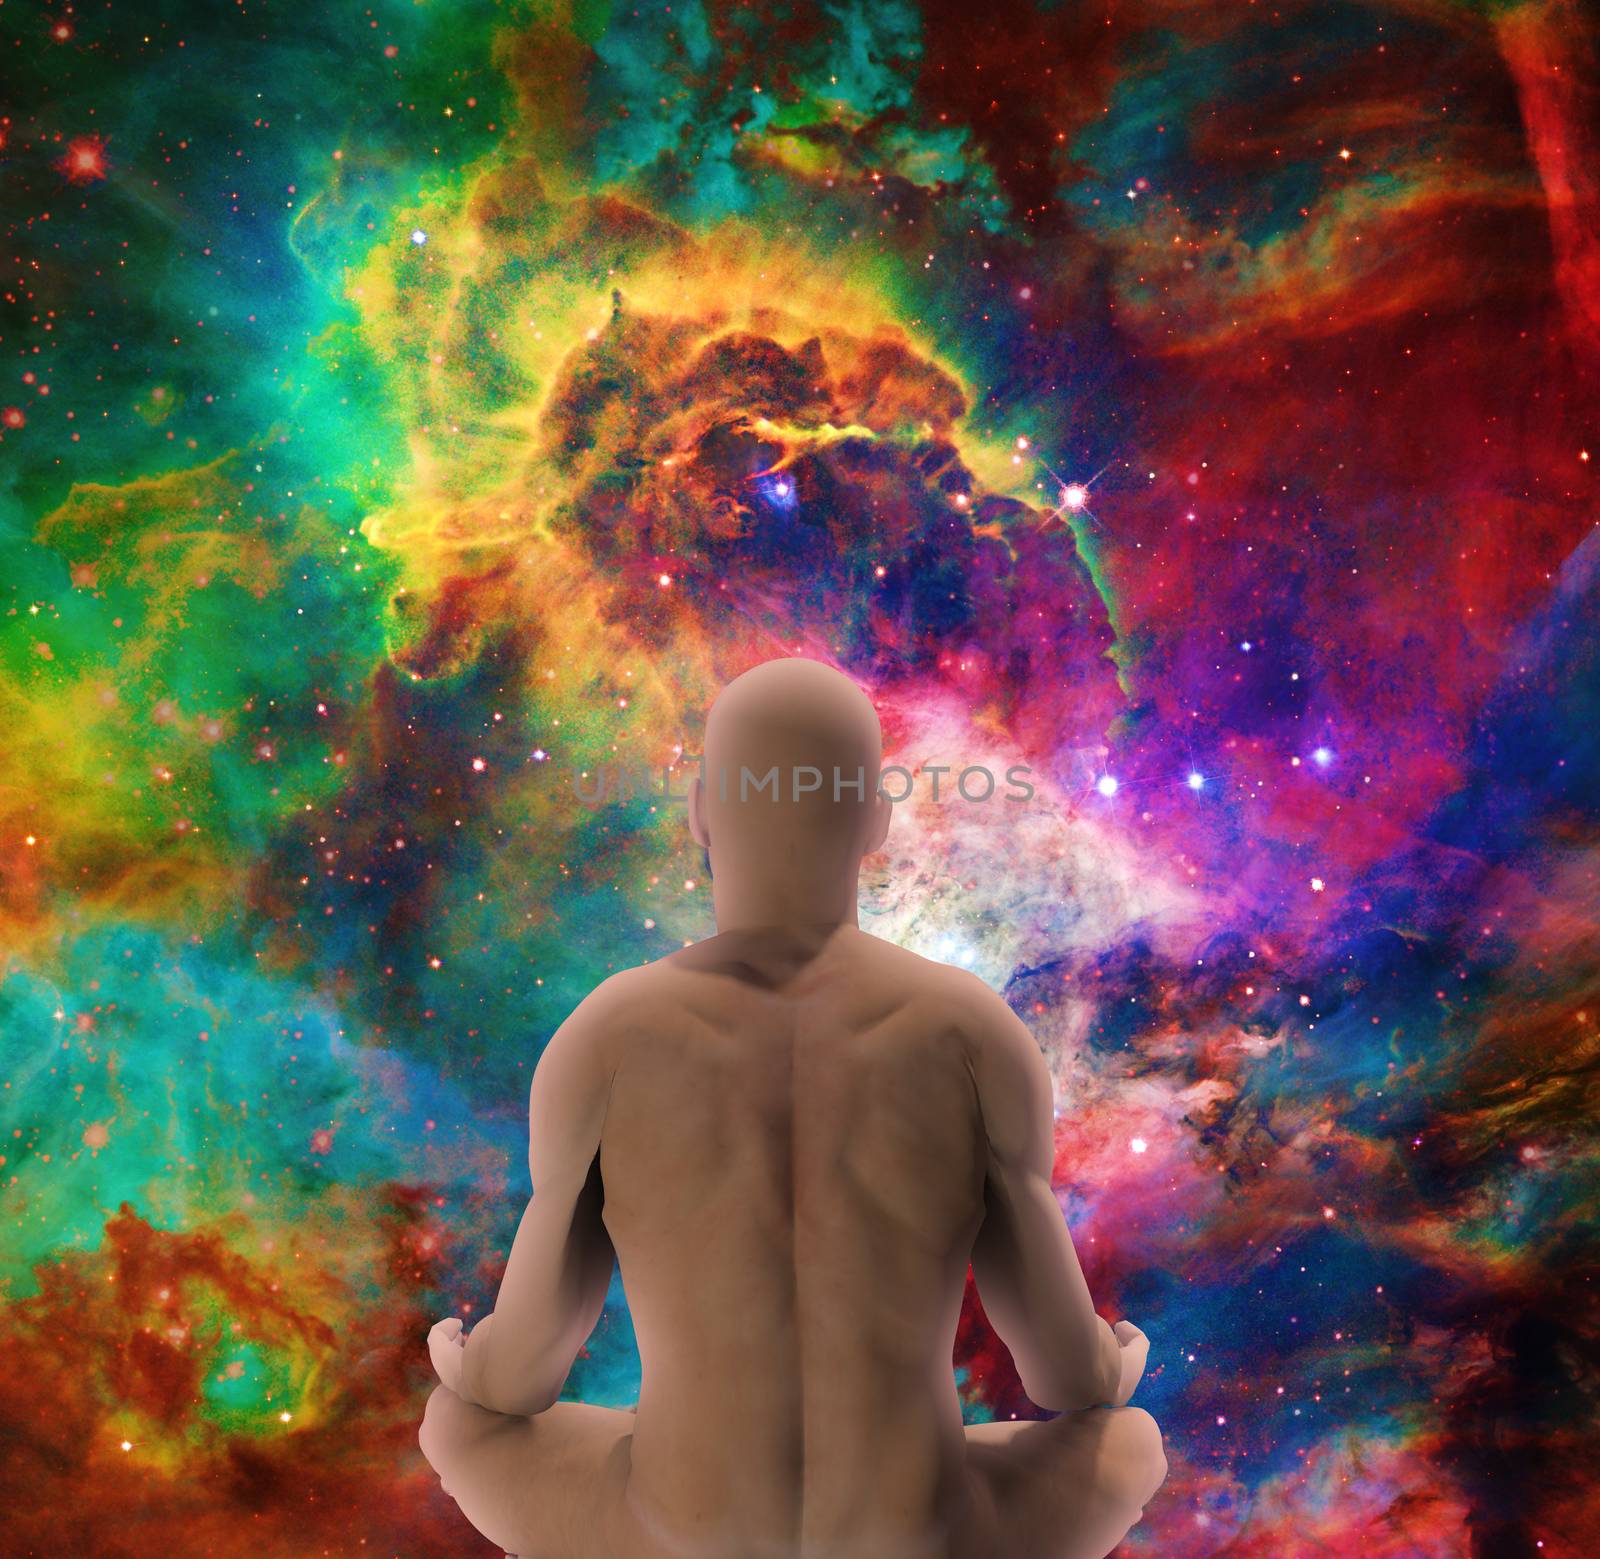 Man in lotus pose meditates before endless space